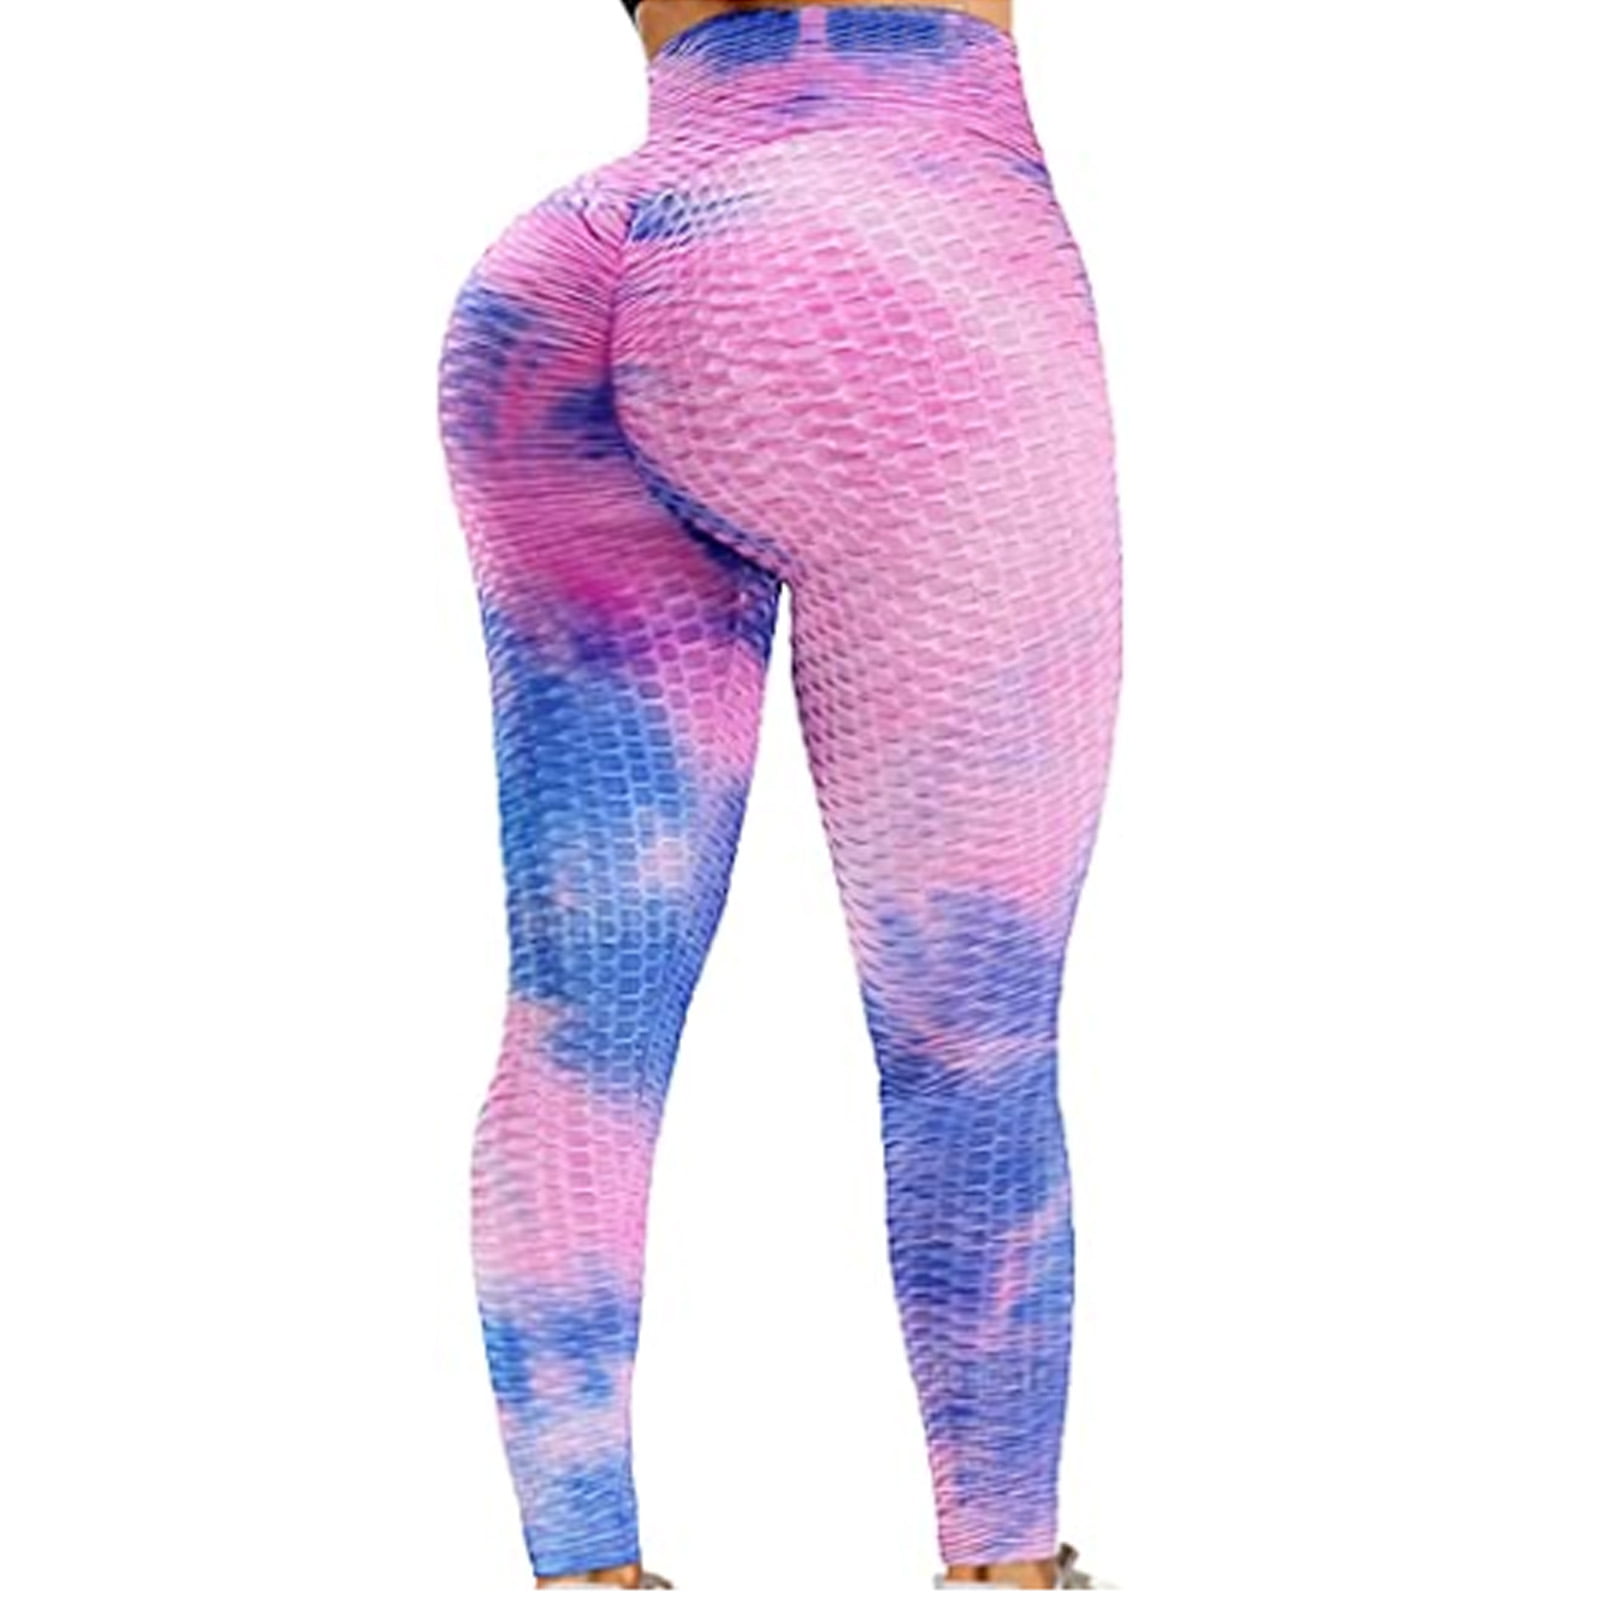 DUROFIT Women Tie Dye Honeycomb Cellulite Legging Multicolor Scrunch Ruched Butt Yoga Pants High Waist 